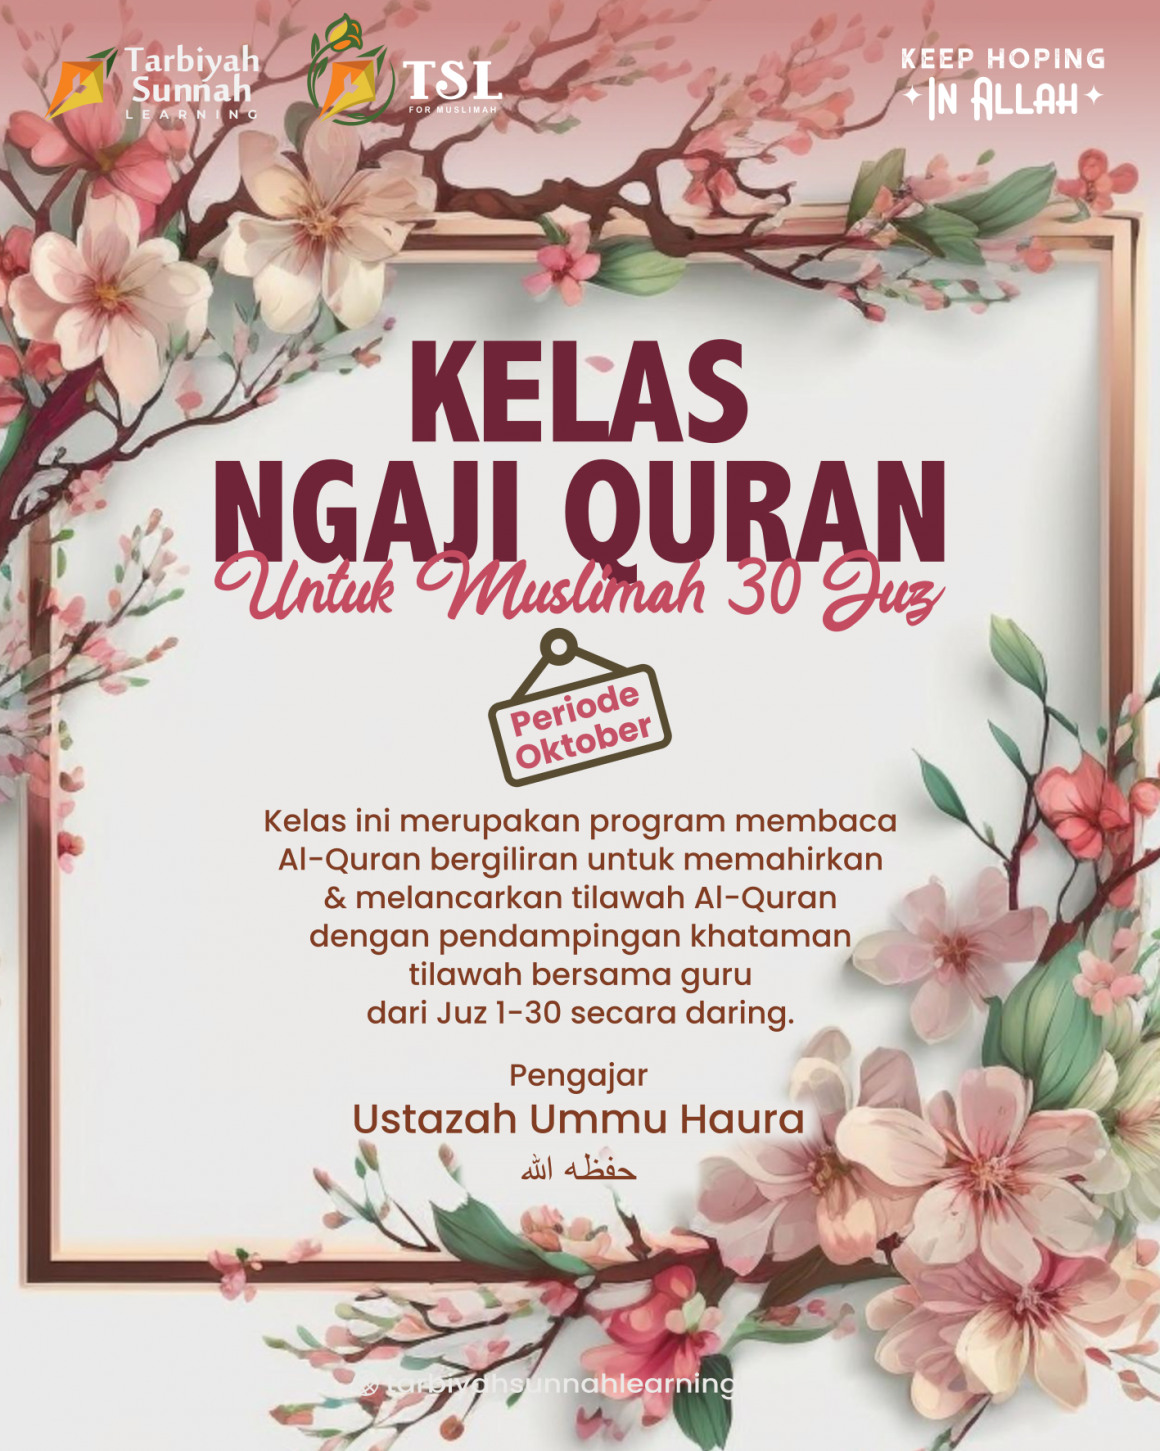 PERIODE OKTOBER; Kelas Ngaji Quran Untuk Muslimah 30 Juz